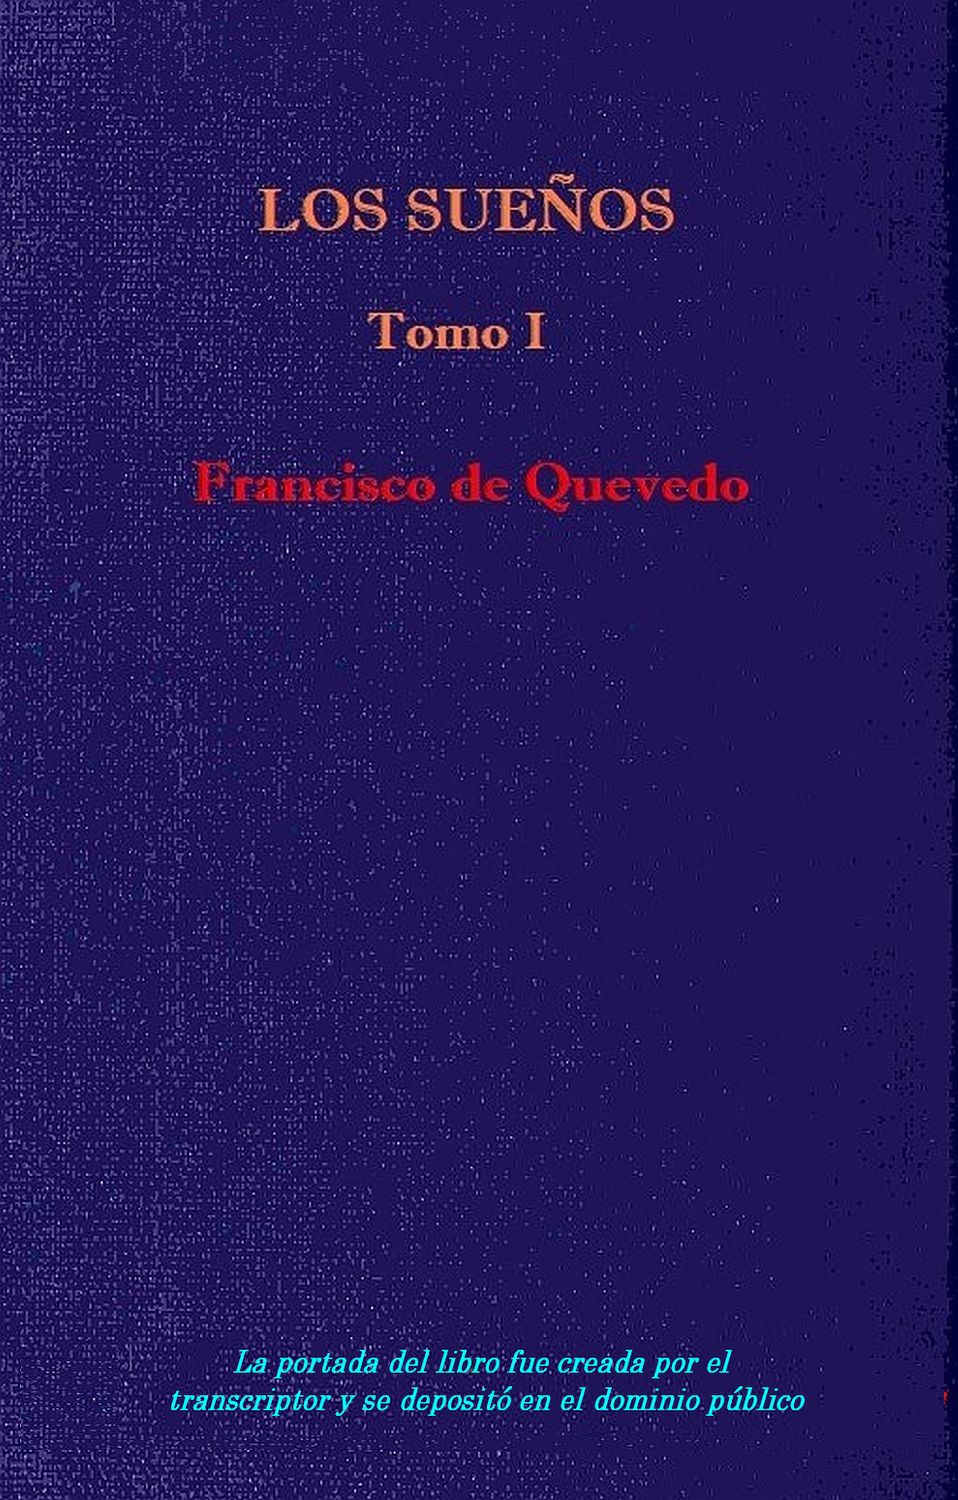 es suficiente haga turismo Bendecir Los sueños - Vol. 1, by Quevedo—A Project Gutenberg eBook